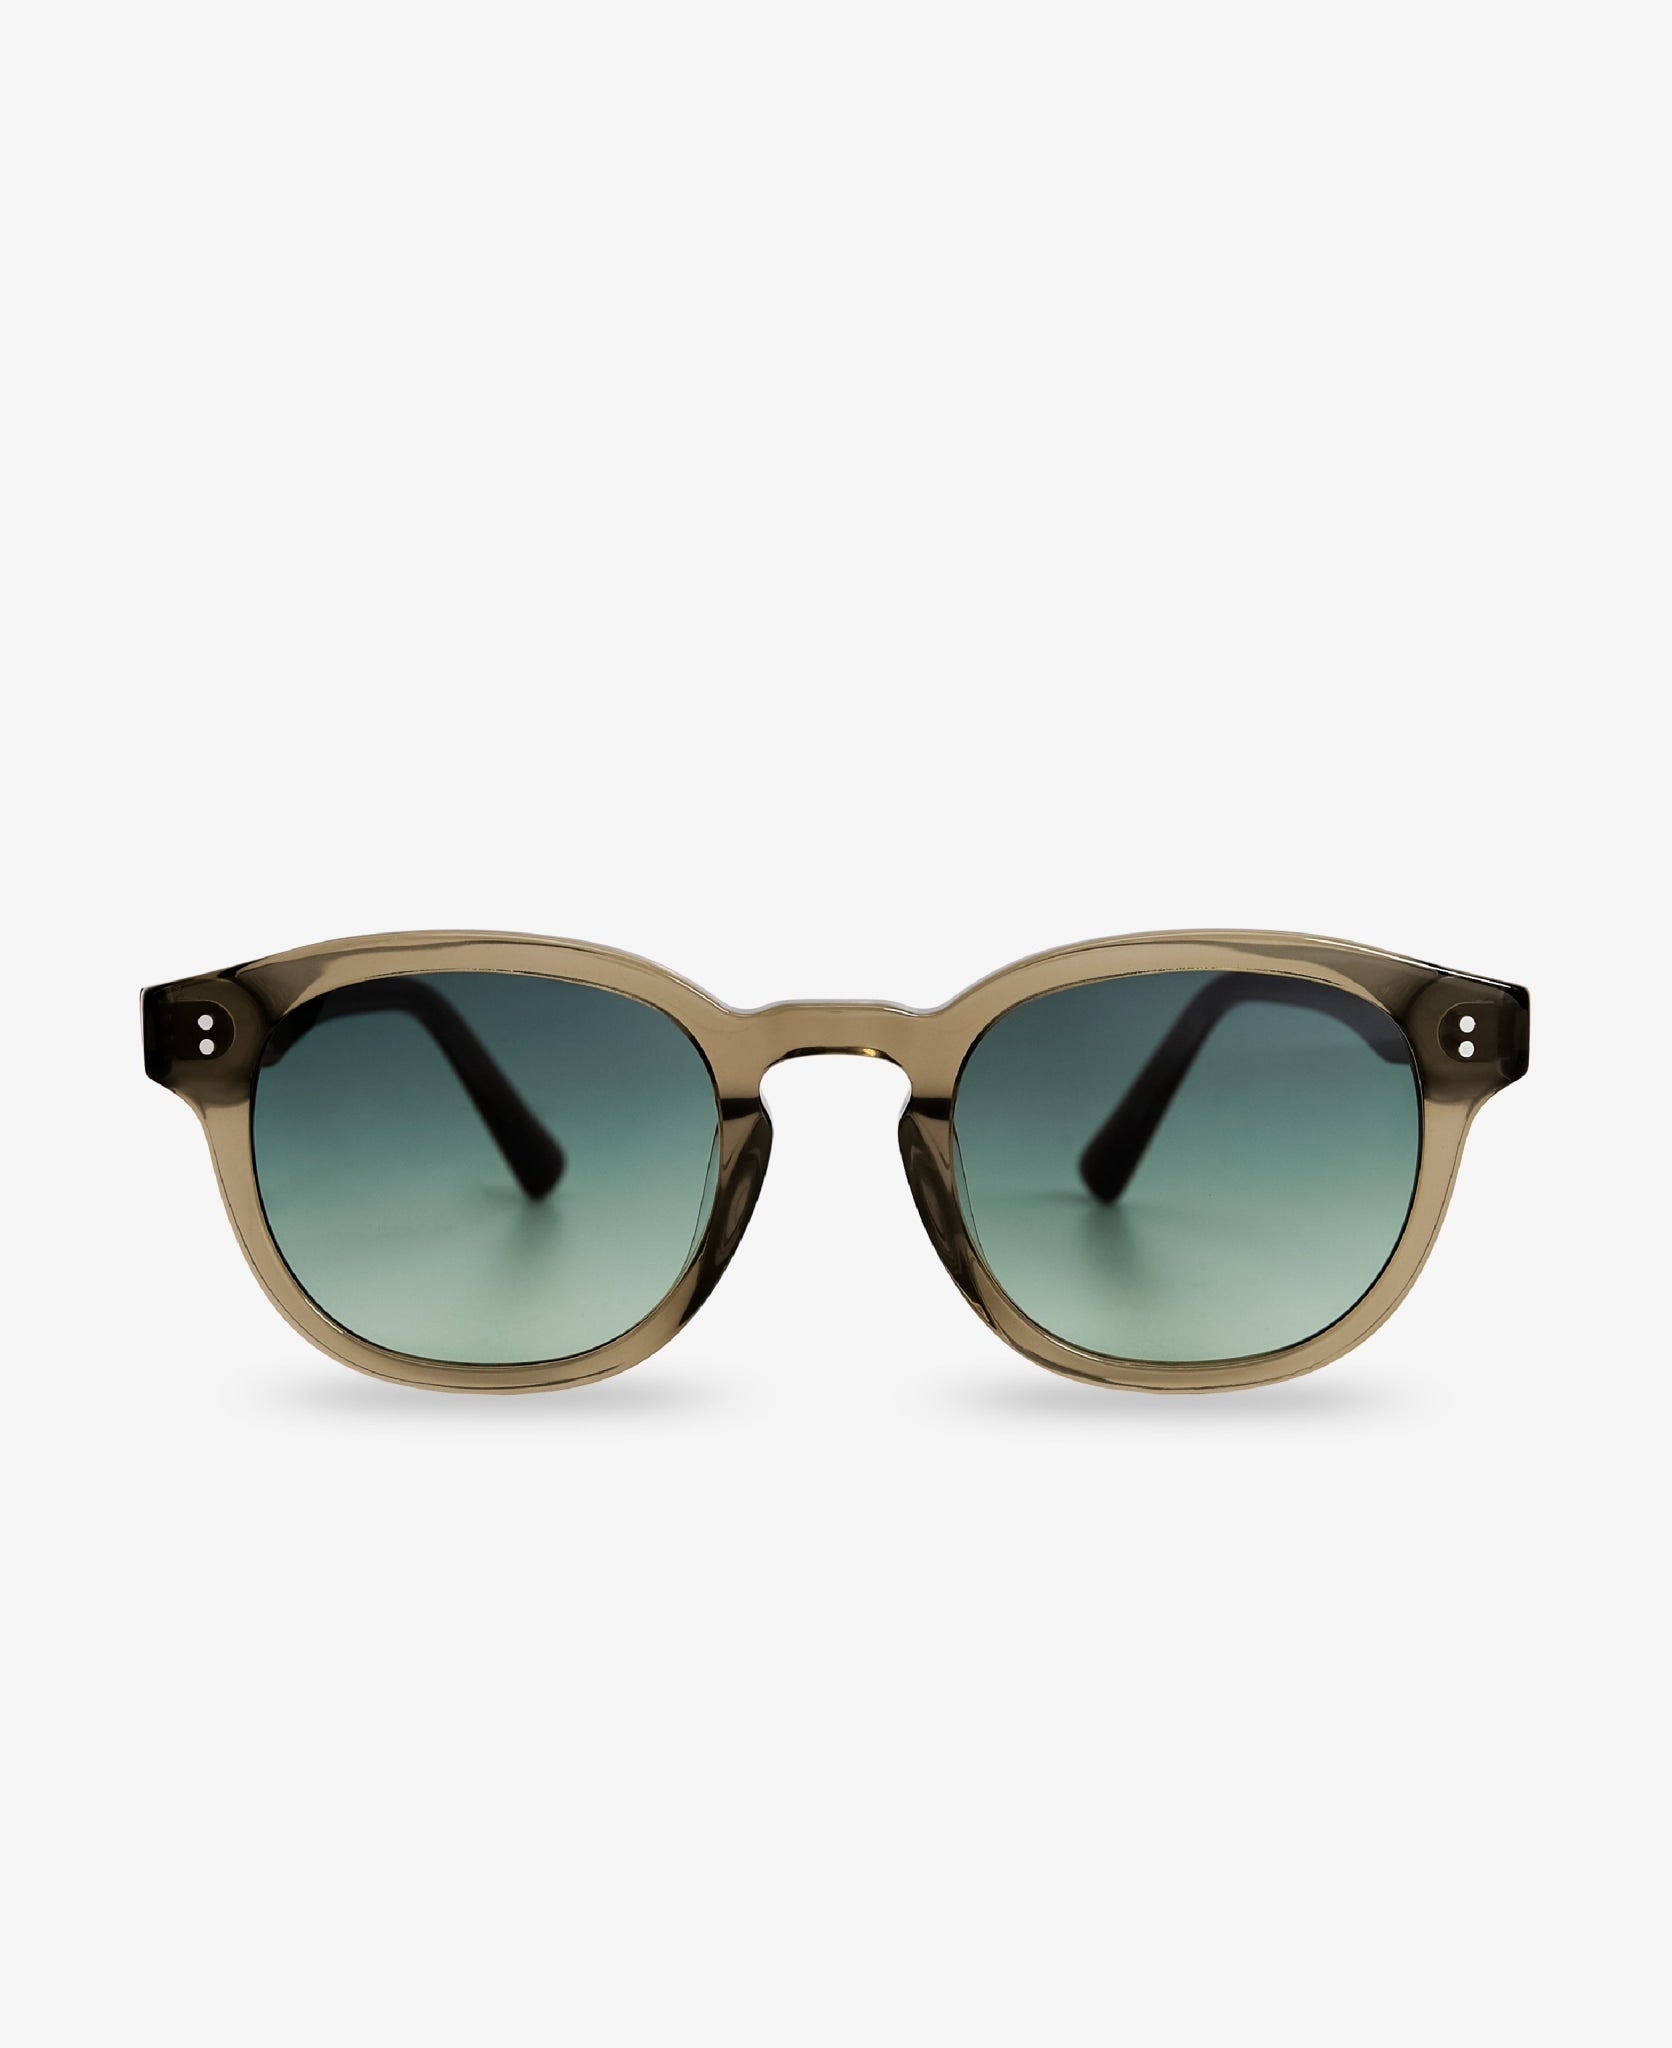 BILLE – Bottle Green – Round Sunglasses |MESSYWEEKEND